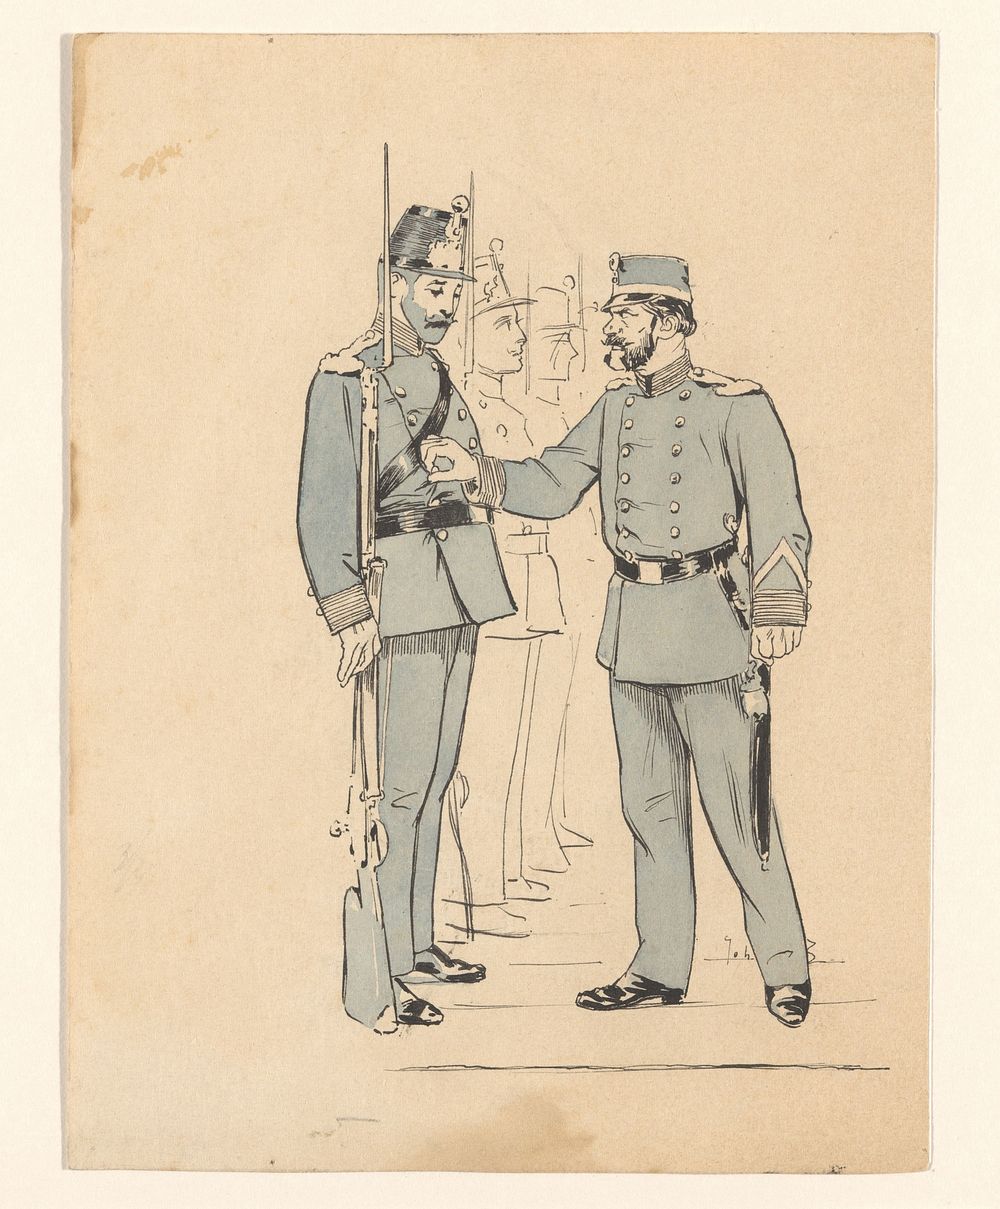 Inspectie van het uniform (1870 - 1940) by Johan Braakensiek